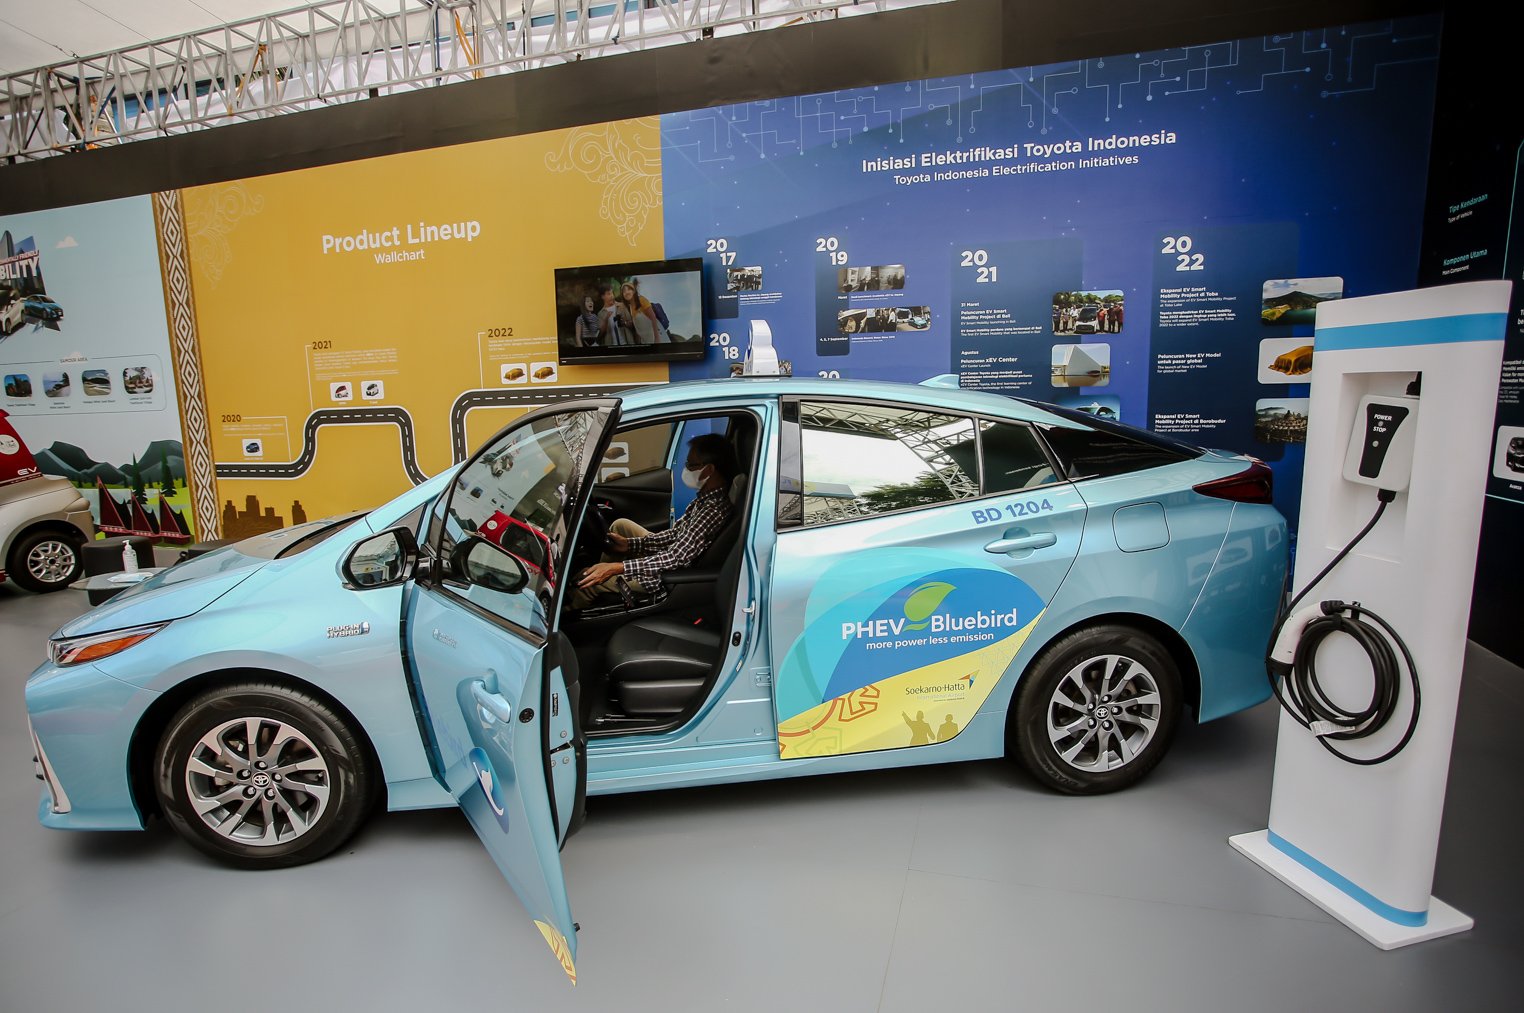 Pengunjung melihat armada angkutan umum Blue Bird yang menggunakan Toyota Prius Plug-In Hybrid Electric Vehicle (PHEV) di ajang Pameran Indonesia Electric Motor Show (IEMS) 2021 di Puspiptek, Serpong, Tangerang Selatan, Banten, Kamis (25/11/2021). Emiten transportasi PT Blue Bird Tbk (BIRD) rencananya hingga tahun 2025 akan menghadirkan taksi listrik sebanyak 10 ribu unit sebagai kendaraan umum ramah lingkungan. ANTARA FOTO/Muhammad Iqbal/wsj.